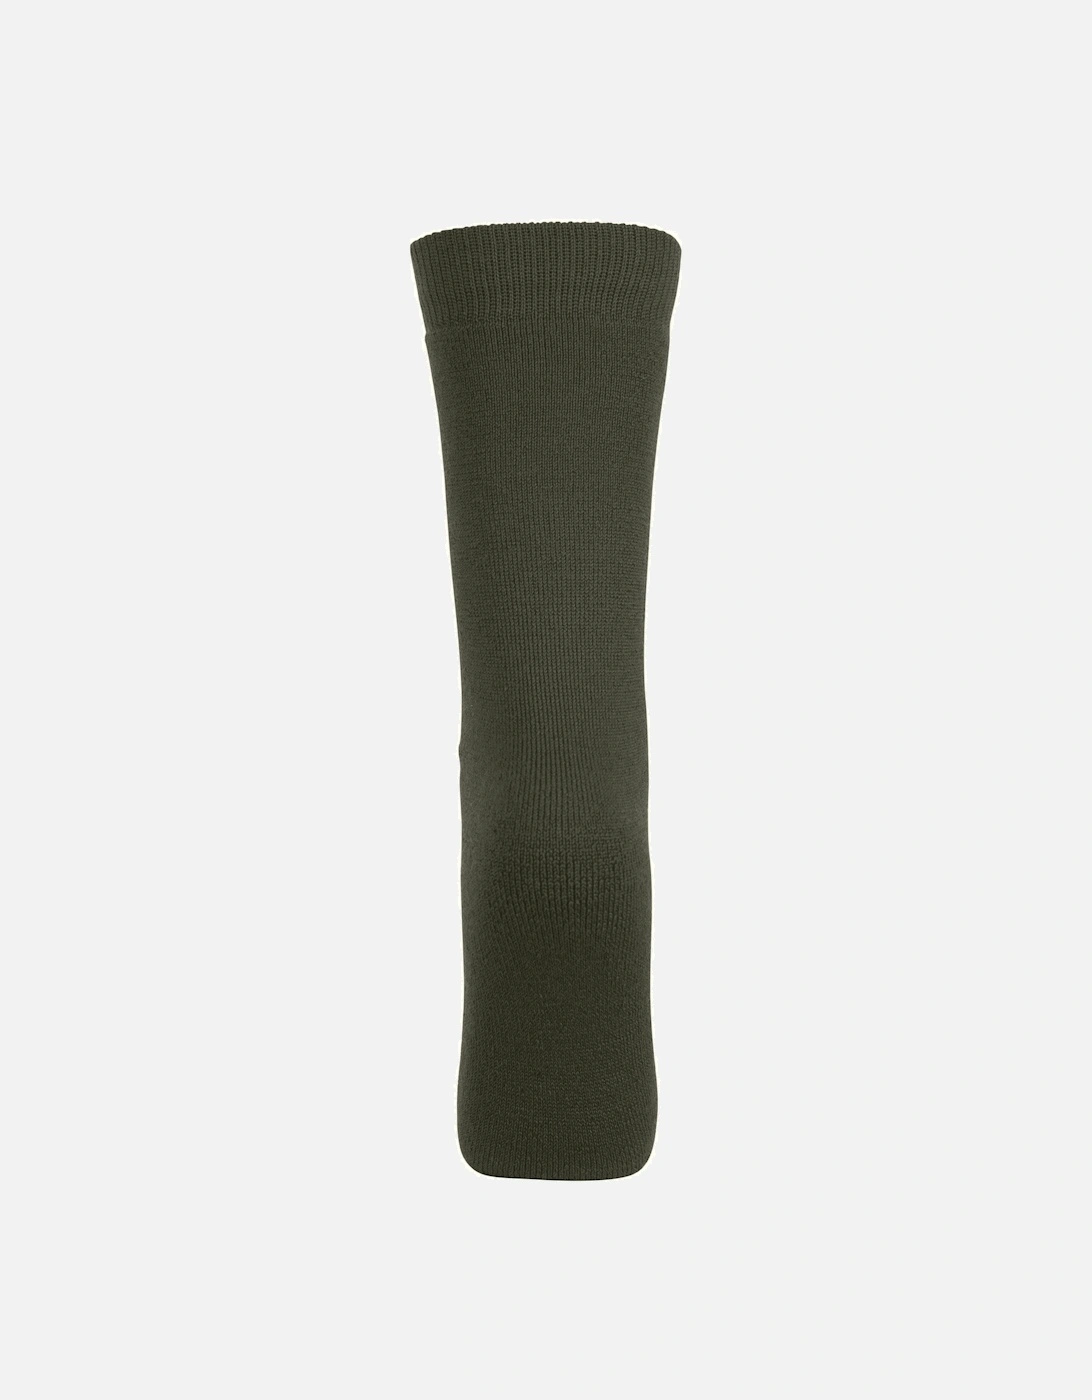 Adults Unisex Tubular Luxury Wool Blend Ski Tube Socks, 5 of 4